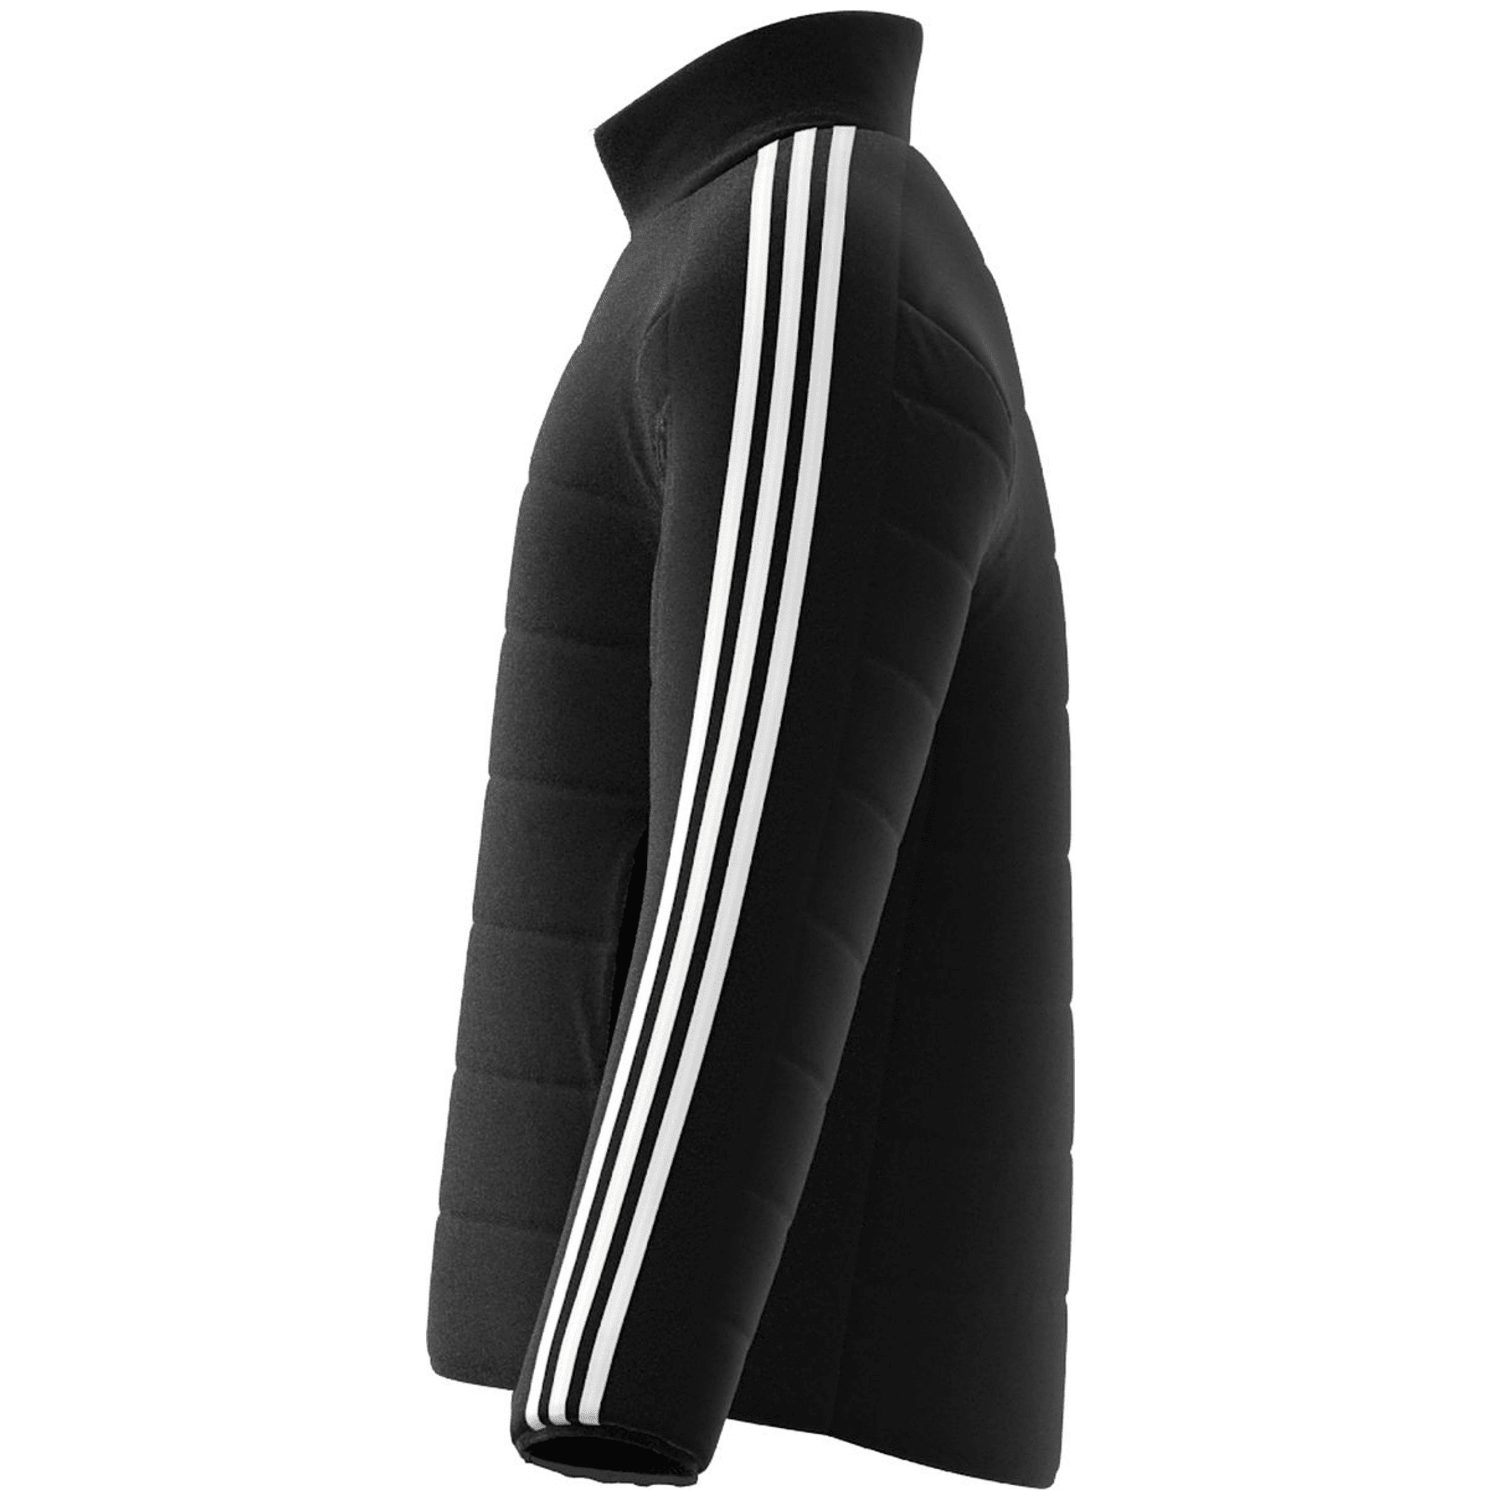 Adidas Essentials 3-Streifen Light Hooded Daunenparka Herren